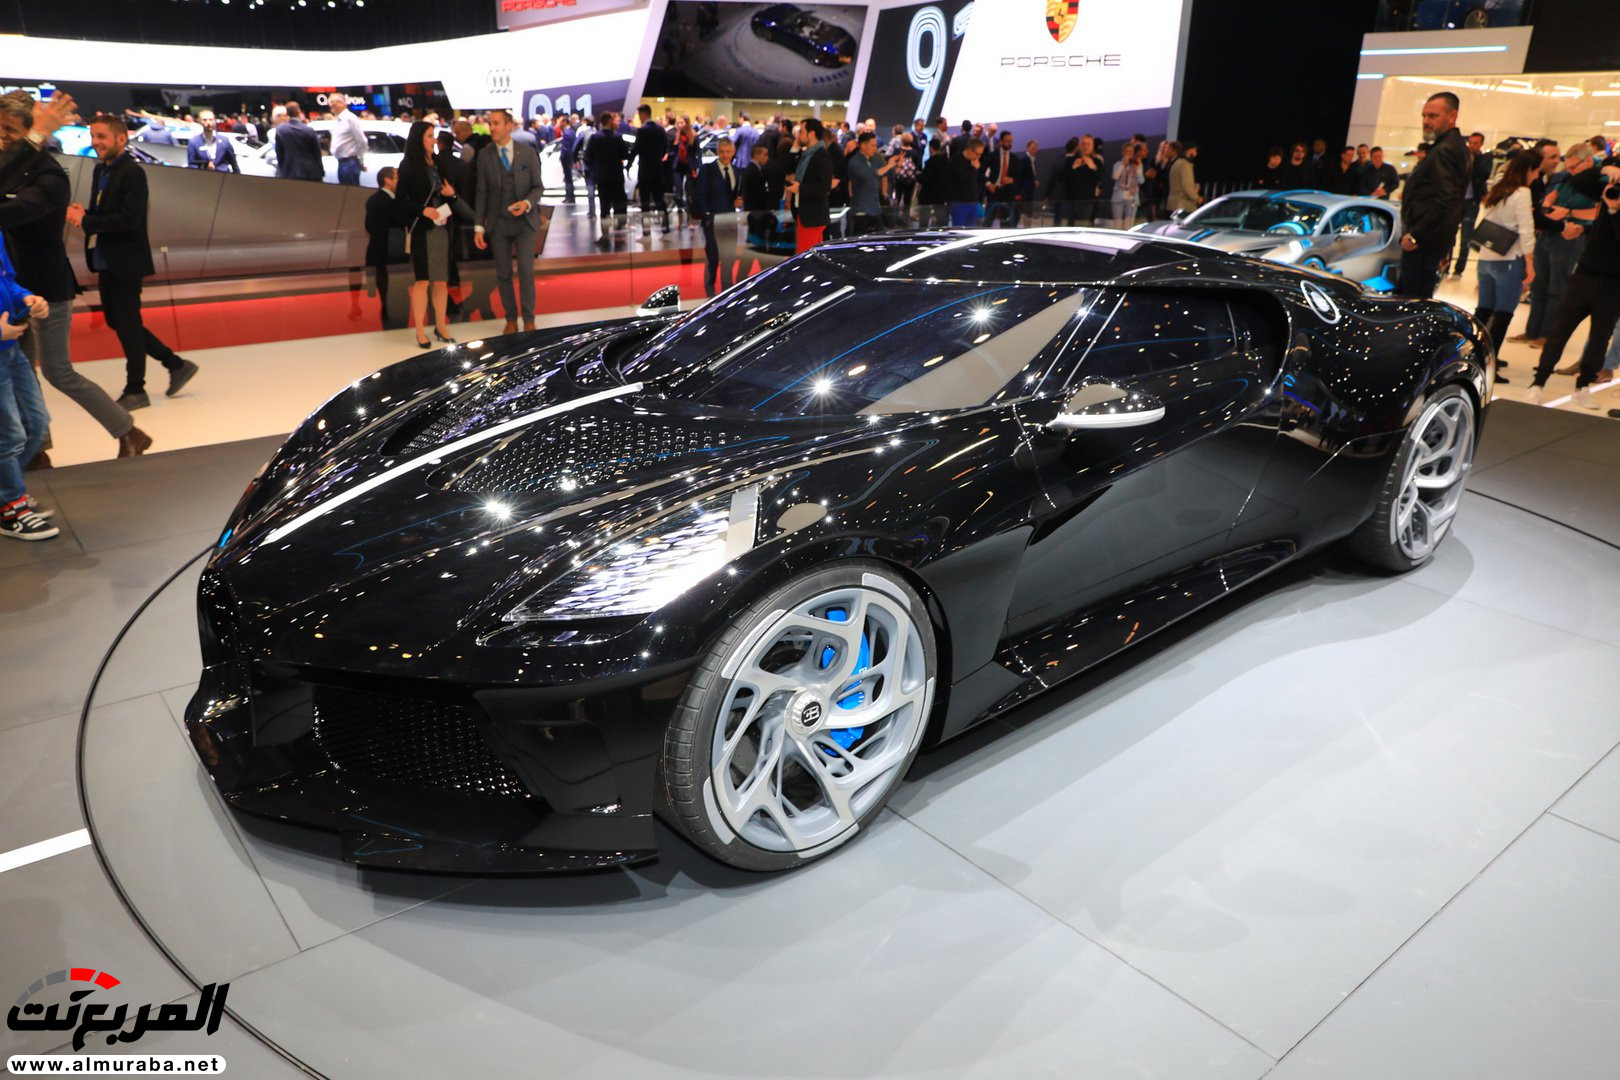 كريستيانو رونالدو قد يكون مالك بوجاتي لافواتيور نوار اغلى سيارة في العالم! 34